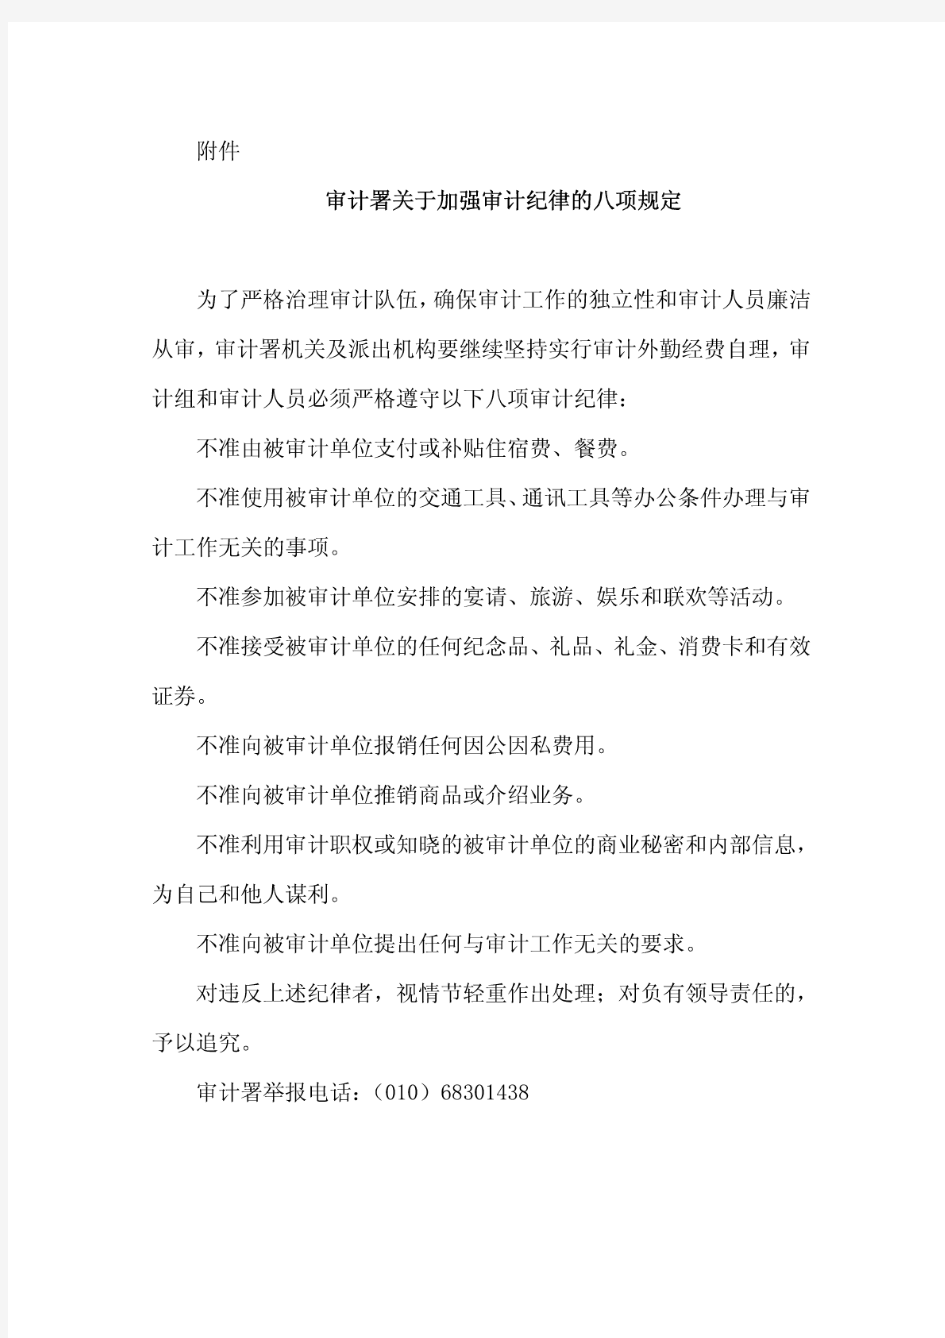 中华人民共和国审计署专项审计调查通知书